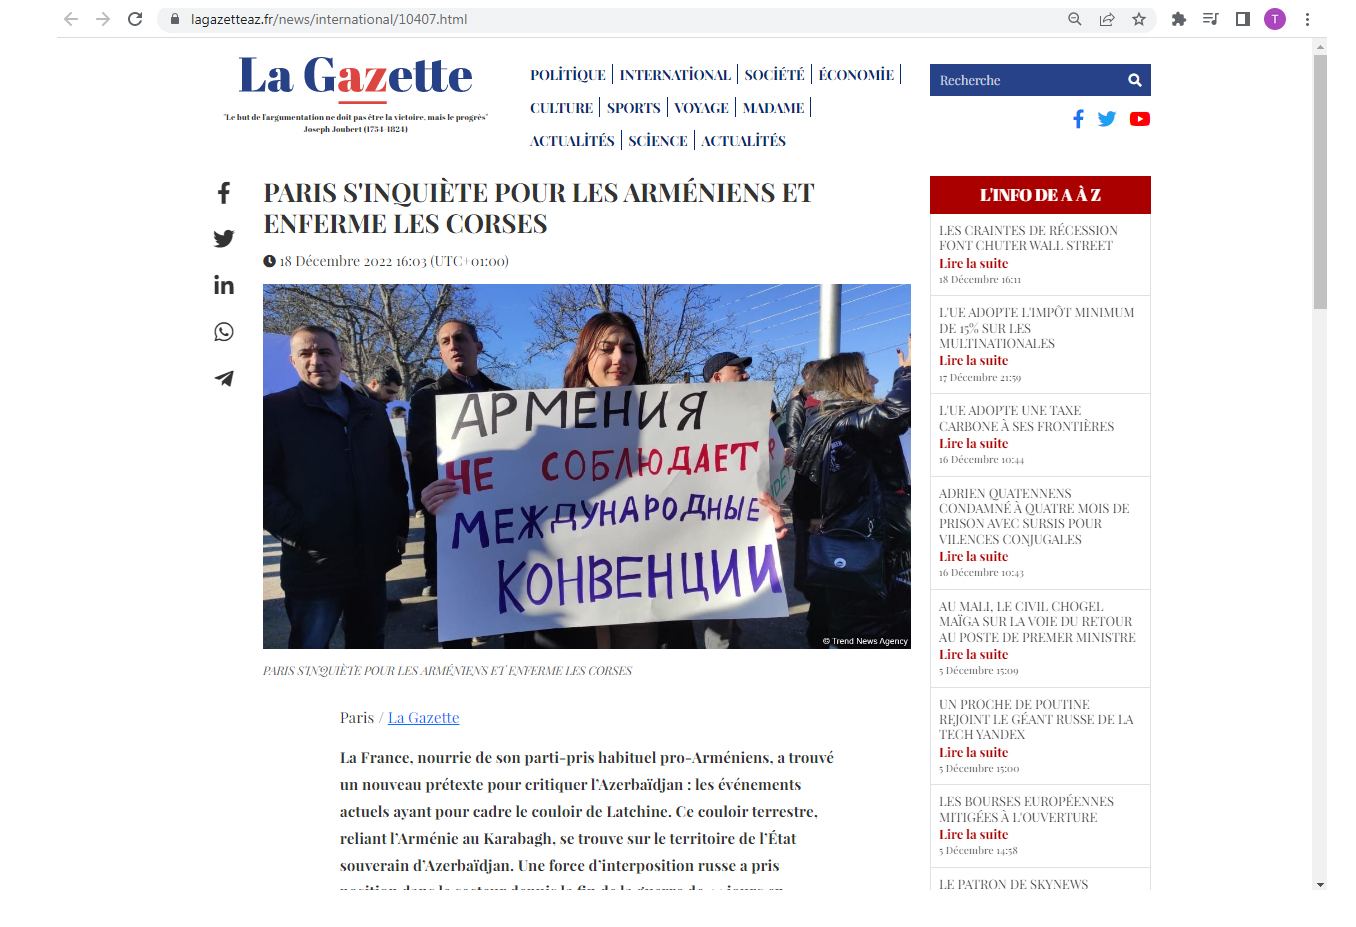 Двойные стандарты по-французски: Париж поддерживает армянский сепаратизм одновременно преследуя корсиканцев - французский журналист